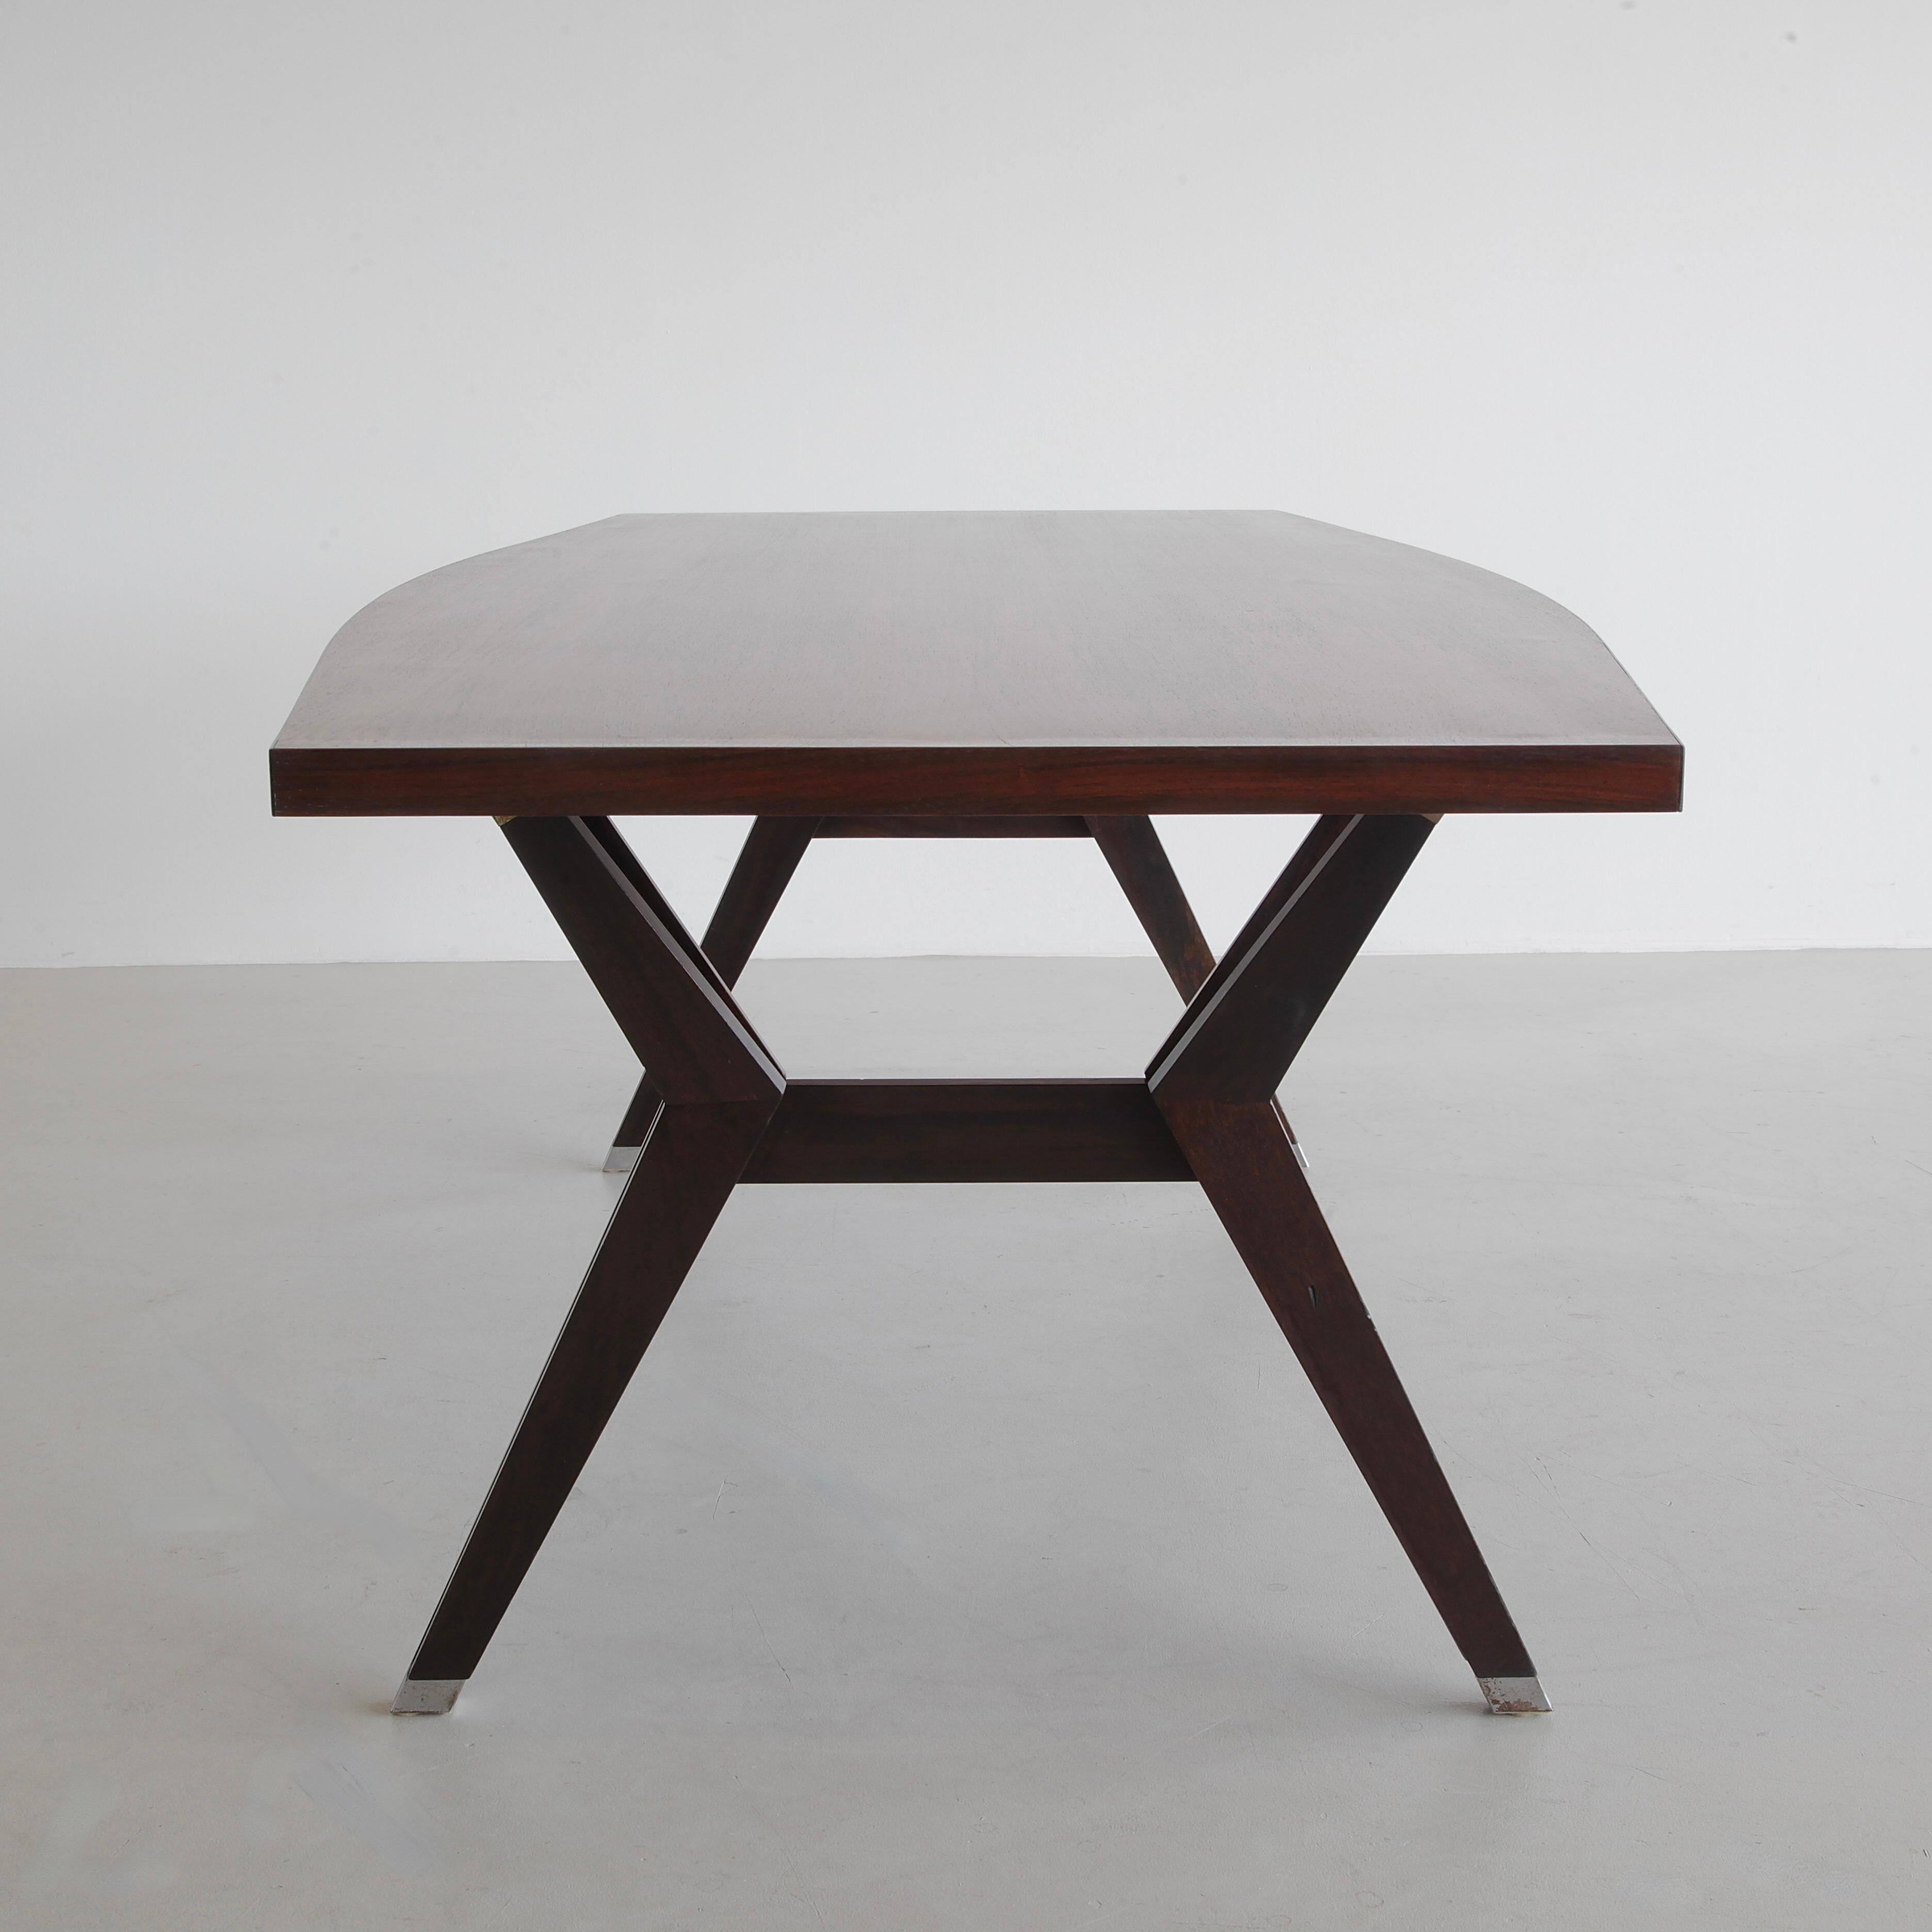 Tisch 'Tolomeo' entworfen von Ennio Fazioli. Italien, MIM Roma, 1963.

Tisch aus Teakholz, entworfen von Fazioli, mit eleganter Platte aus Holzfurnier. U-förmige Beine aus Massivholz mit verschränkten Armen und quadratischen Metallfüßen. Einfach